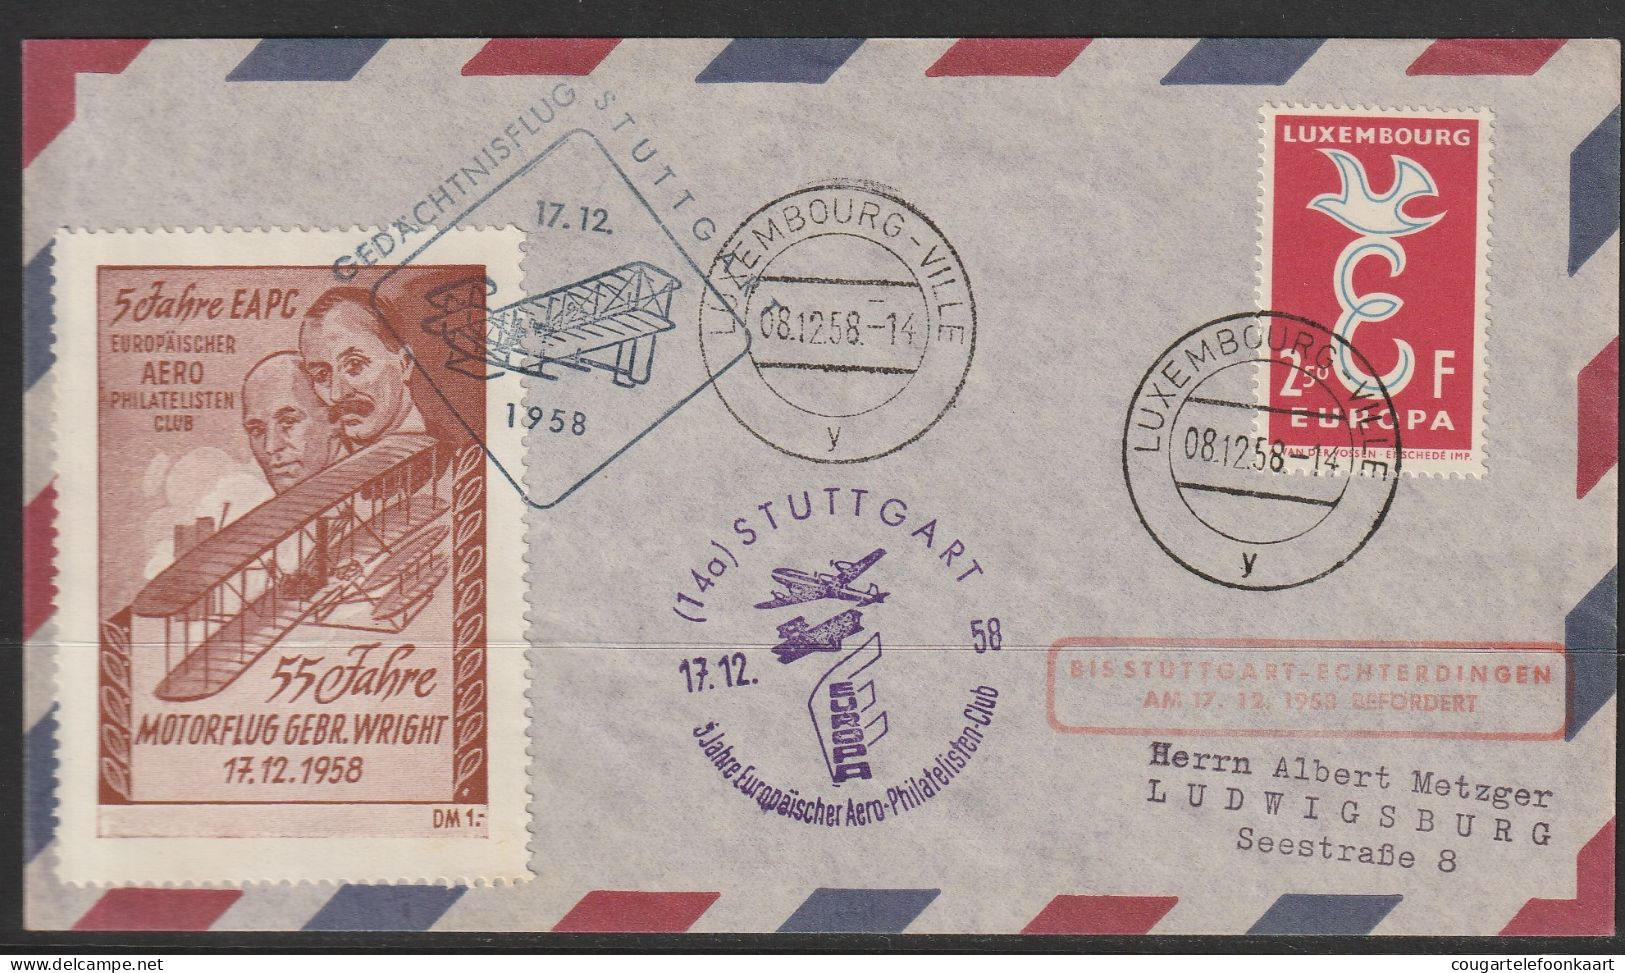 1958, Lufthansa, Gedächtnisflug Stuttgart, Luxembourg-Ville, Zuleitungspost, Wright - Lettres & Documents